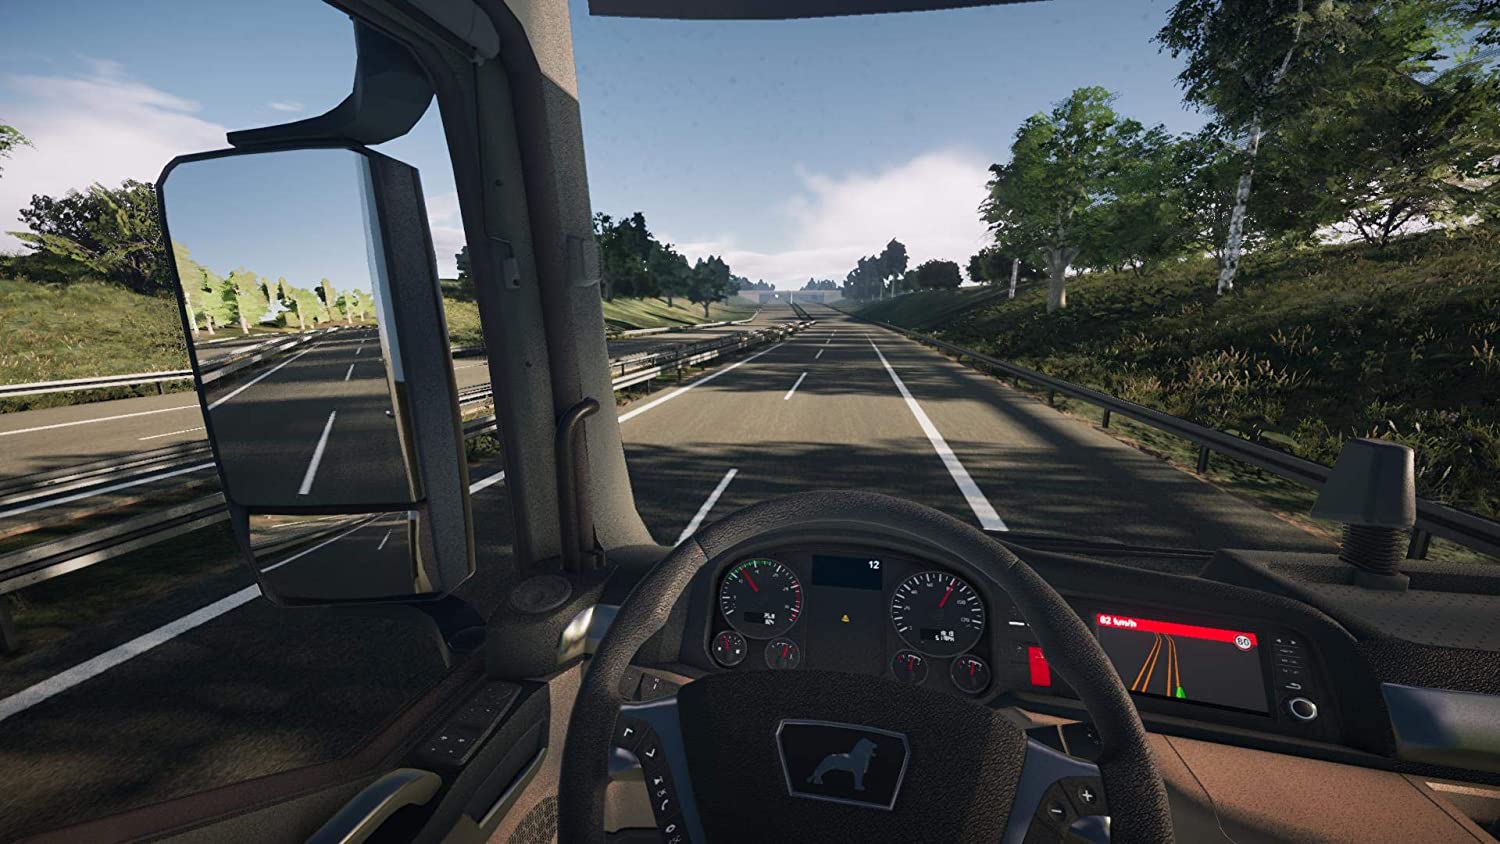 Новый симулятор играть. On the Road – Truck Simulation игра. Truck Simulator ps4. On the Road Truck Simulator для PLAYSTATION 4. Евро трак симулятор на ПС 4.